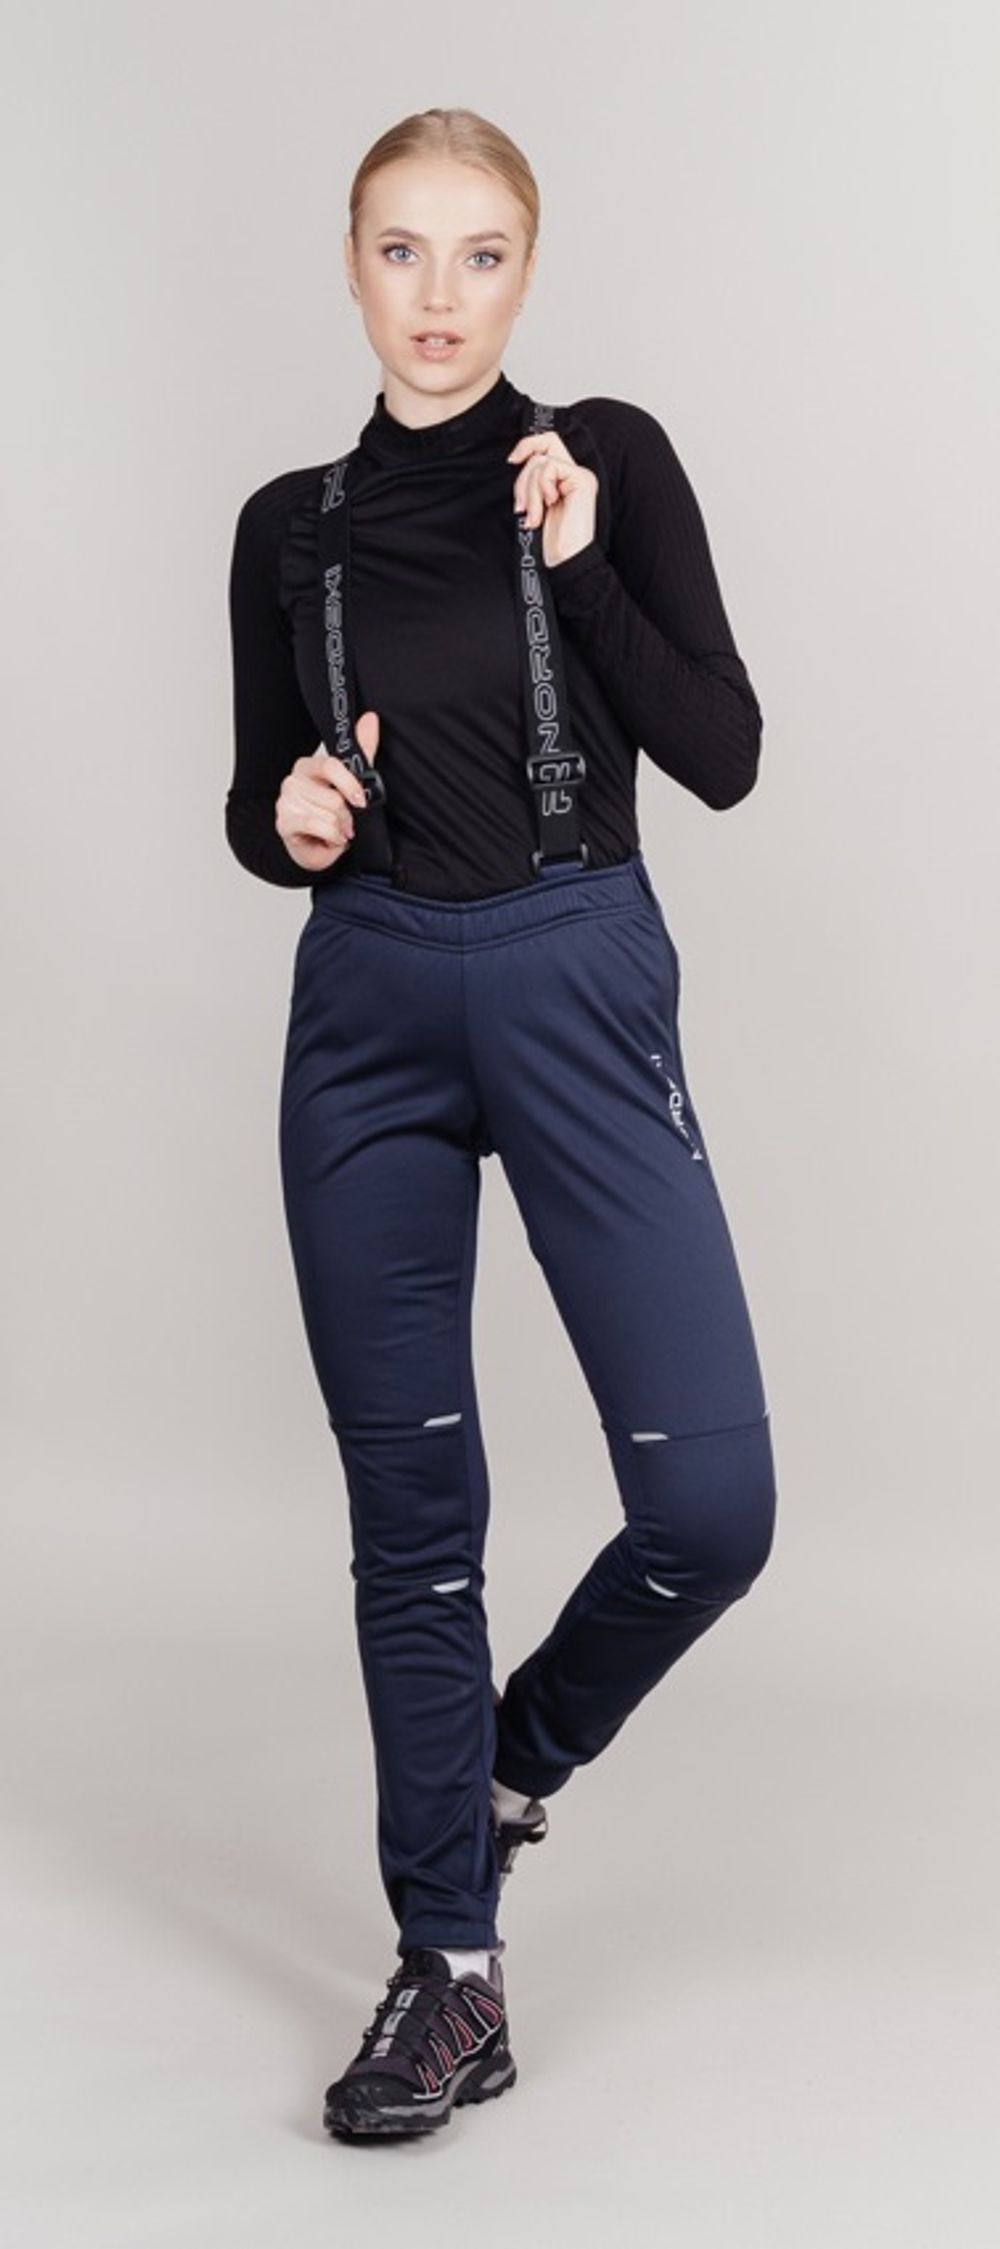 Лыжные брюки Nordski Premium темно-синие женские 442021 купить со скидкой вМоскве